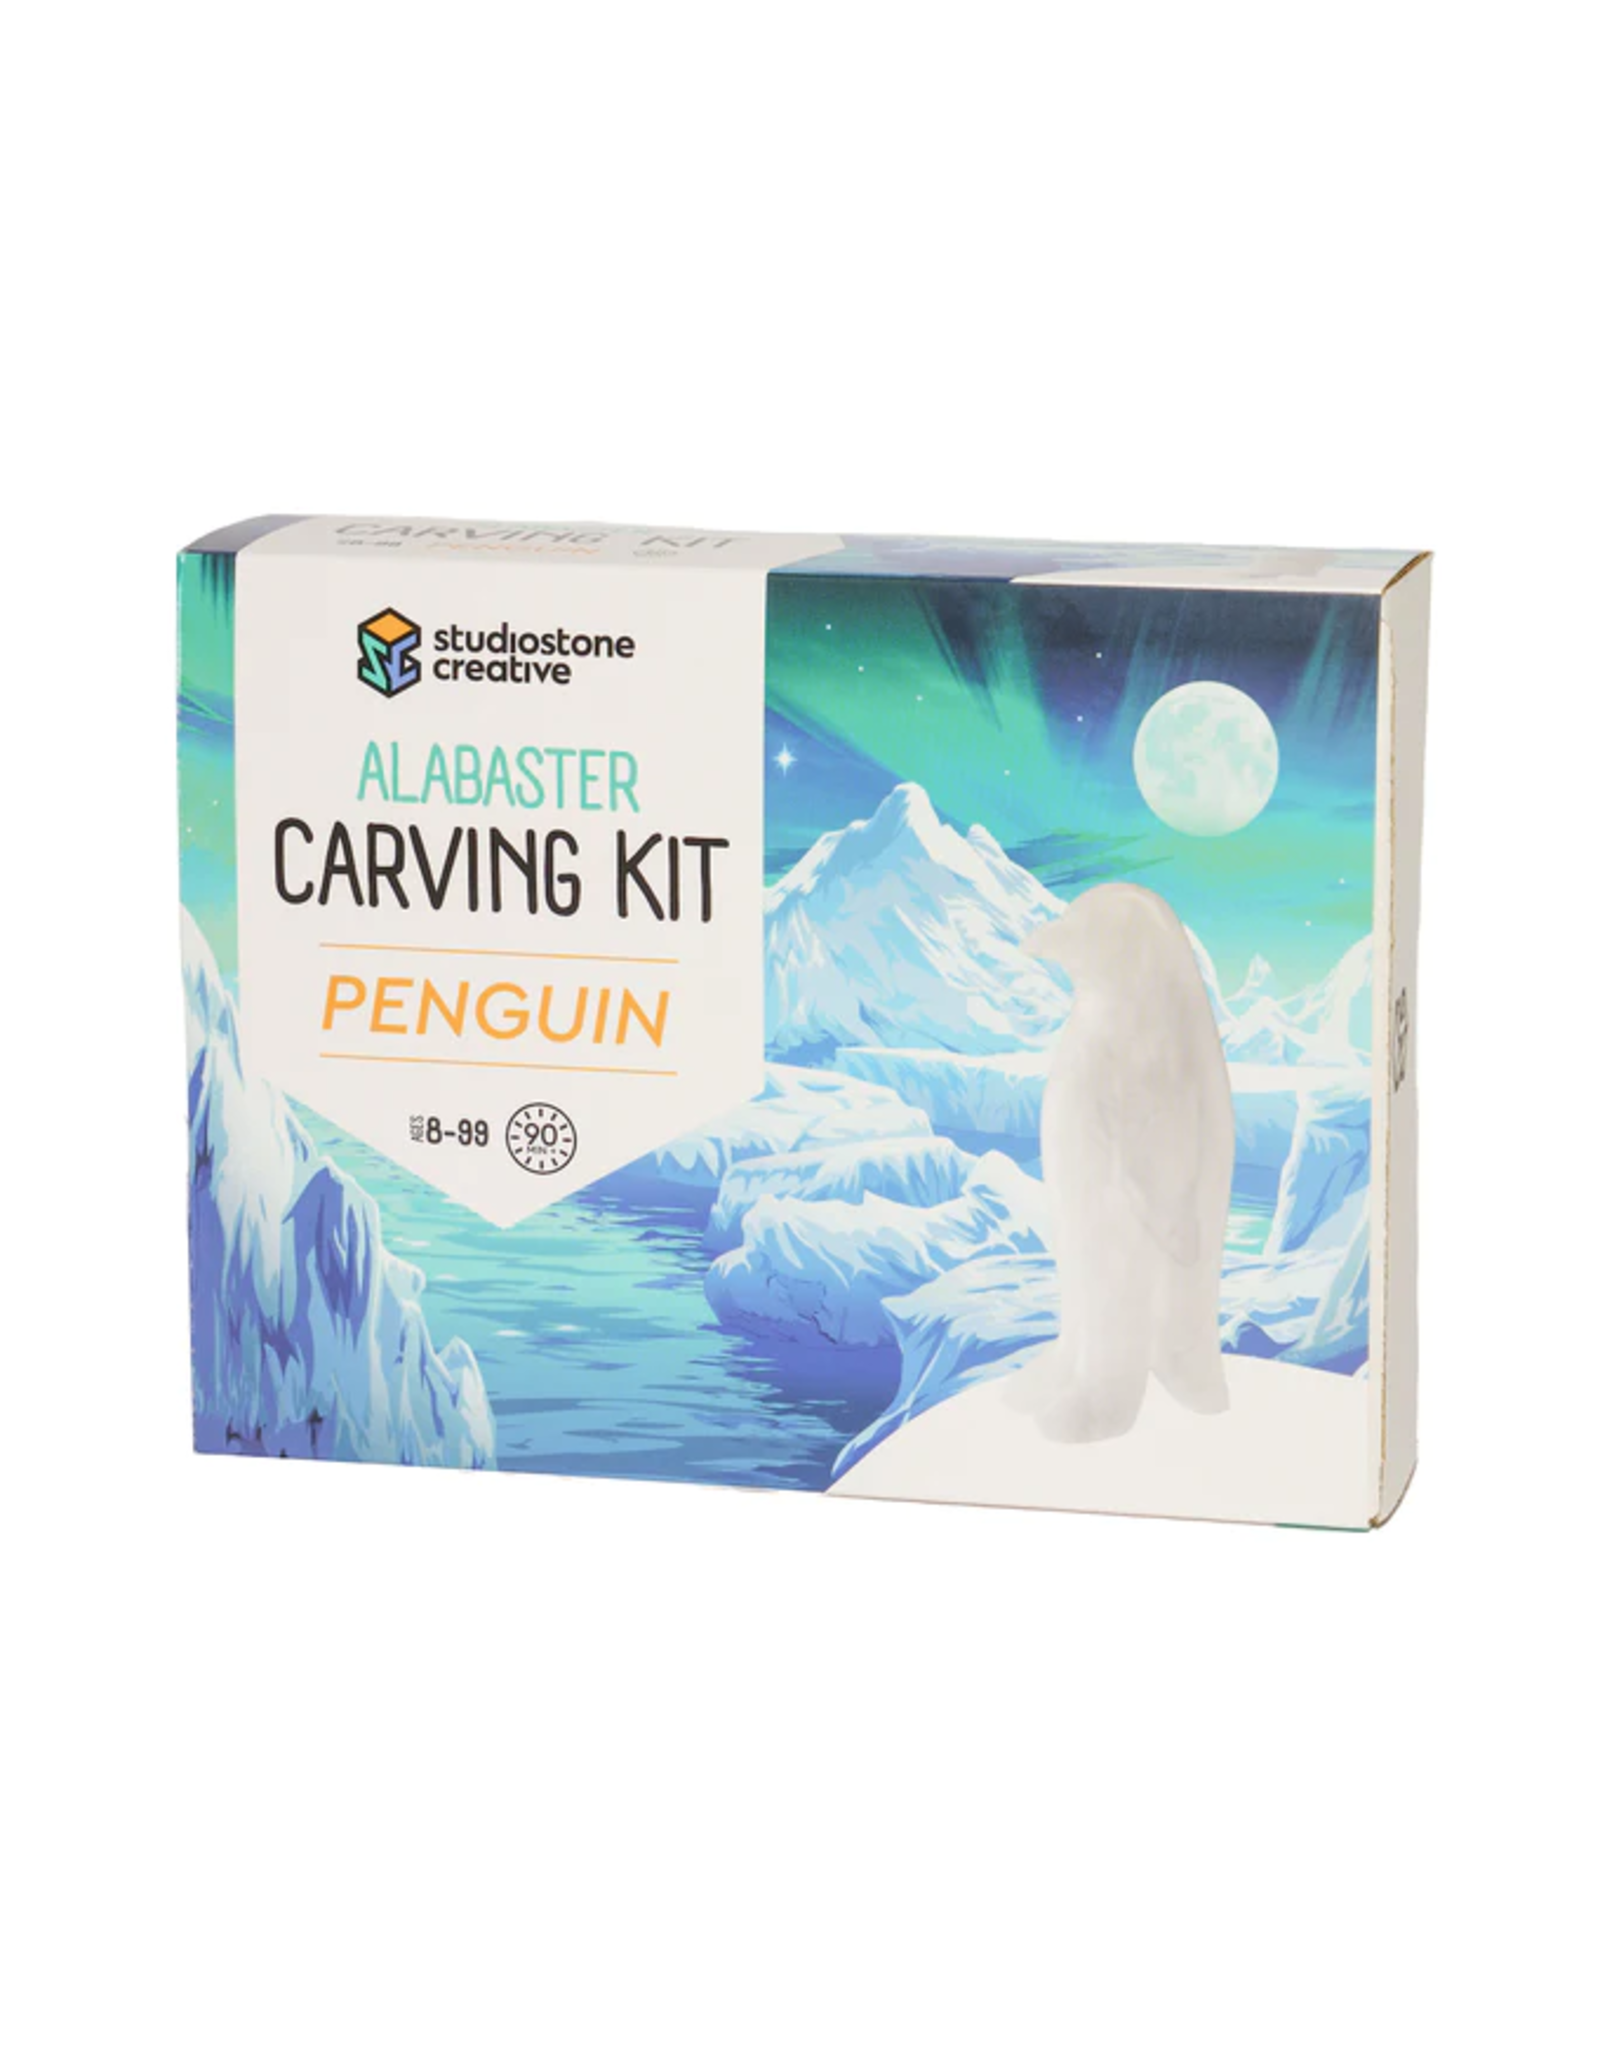 Alabaster Carving Kit - Penguin